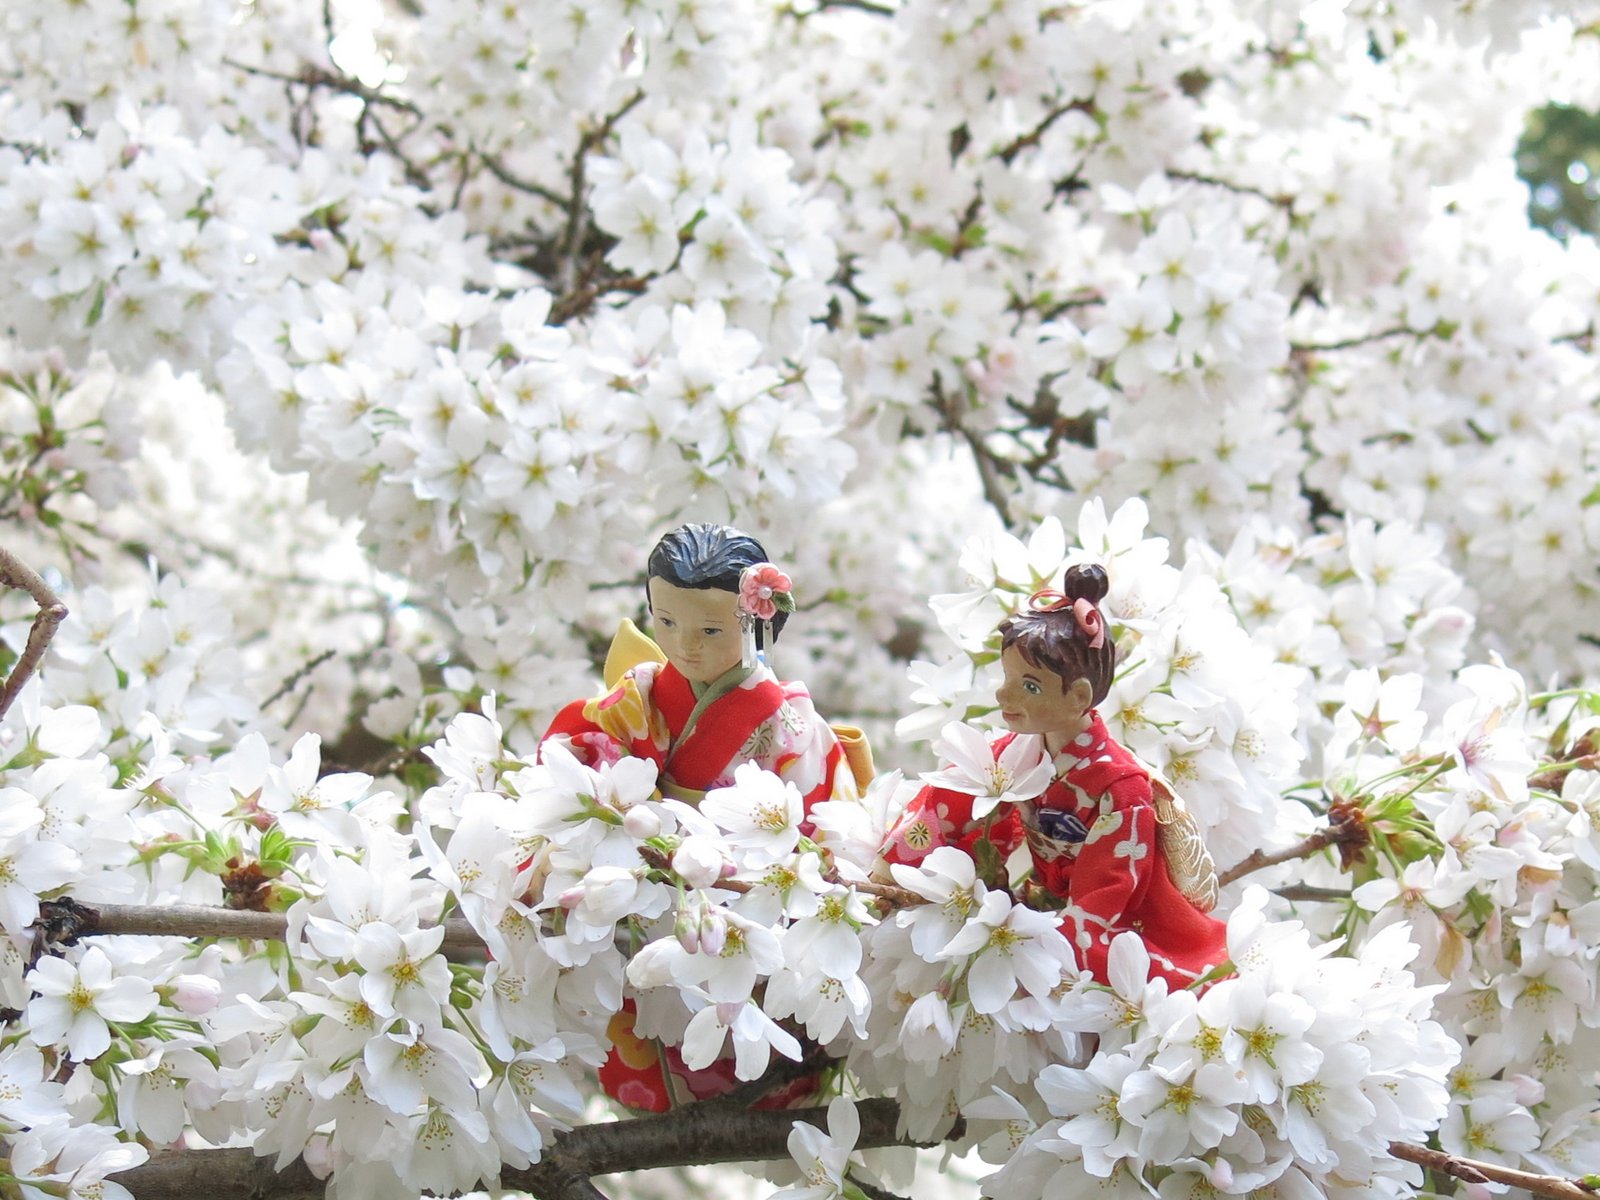 Сакура цветет дней. Праздник цветения вишни Сакуры в Японии. Фестиваль любования сакурой в Японии. Фестиваль цветения Сакуры в Японии. Ханами – любование сакурой в Японии.